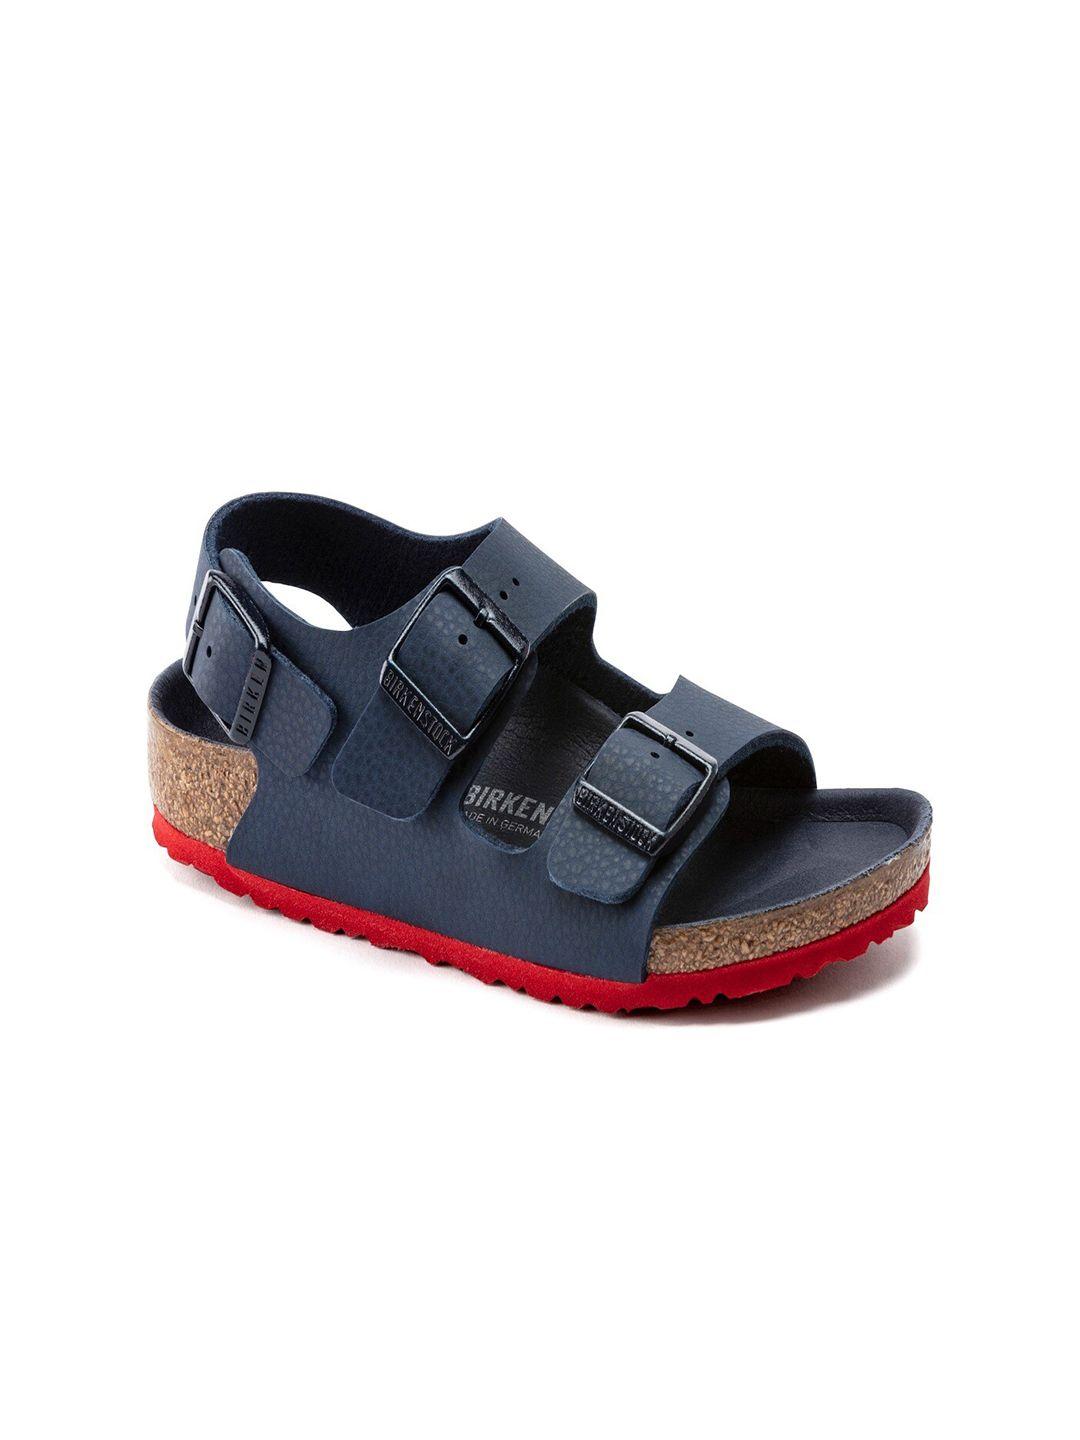 Birkenstock Boys Blue Narrow Width Milano Comfort Sandals